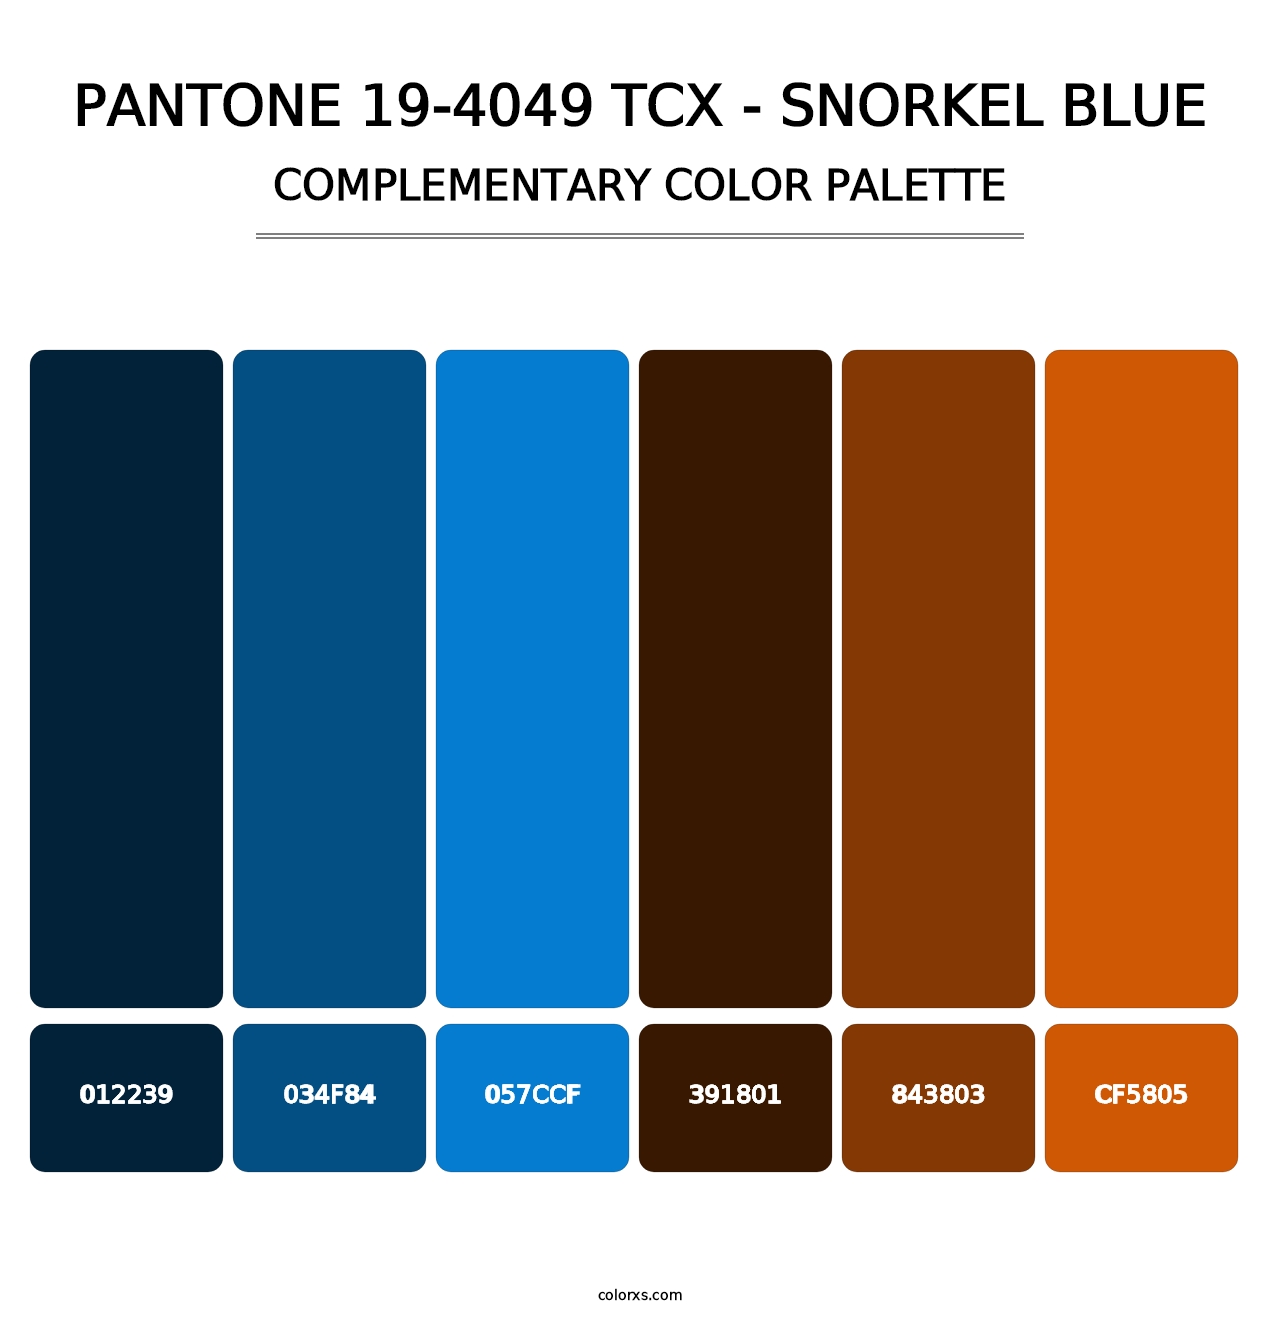 PANTONE 19-4049 TCX - Snorkel Blue - Complementary Color Palette